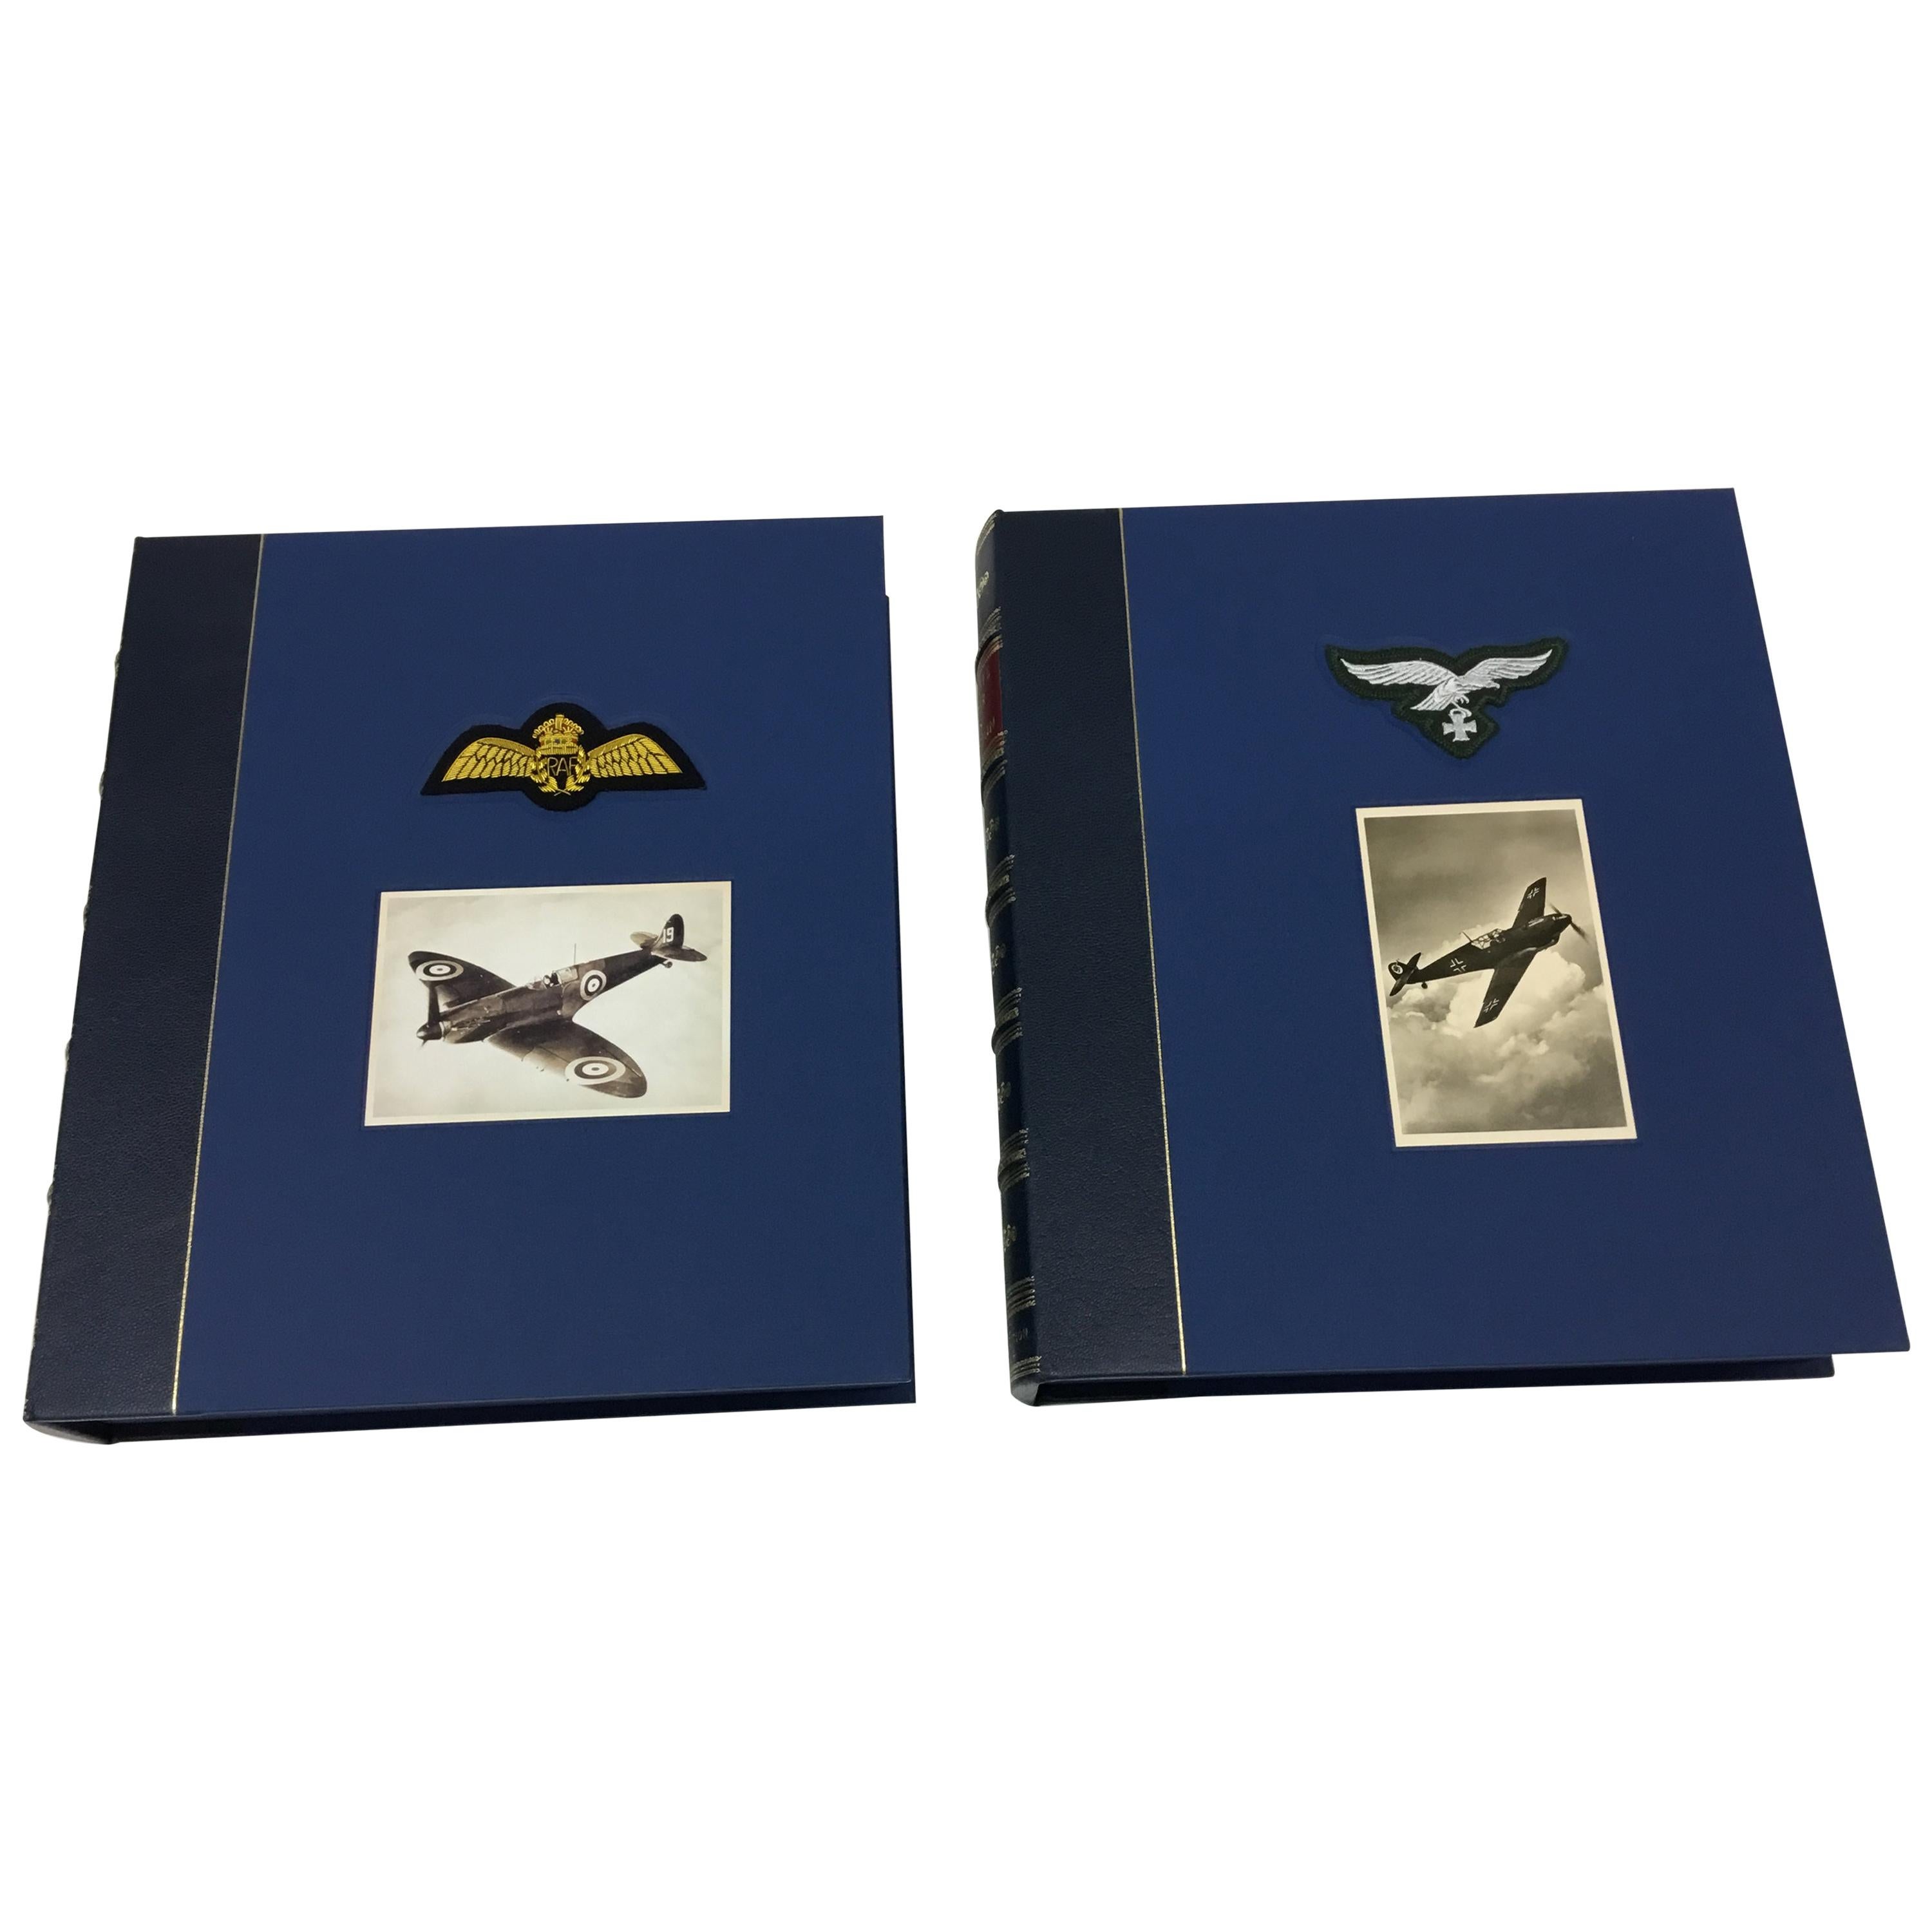 Battle of Britain Fighter Aces Kollektion, signierte limitierte Auflage, zwei Bände